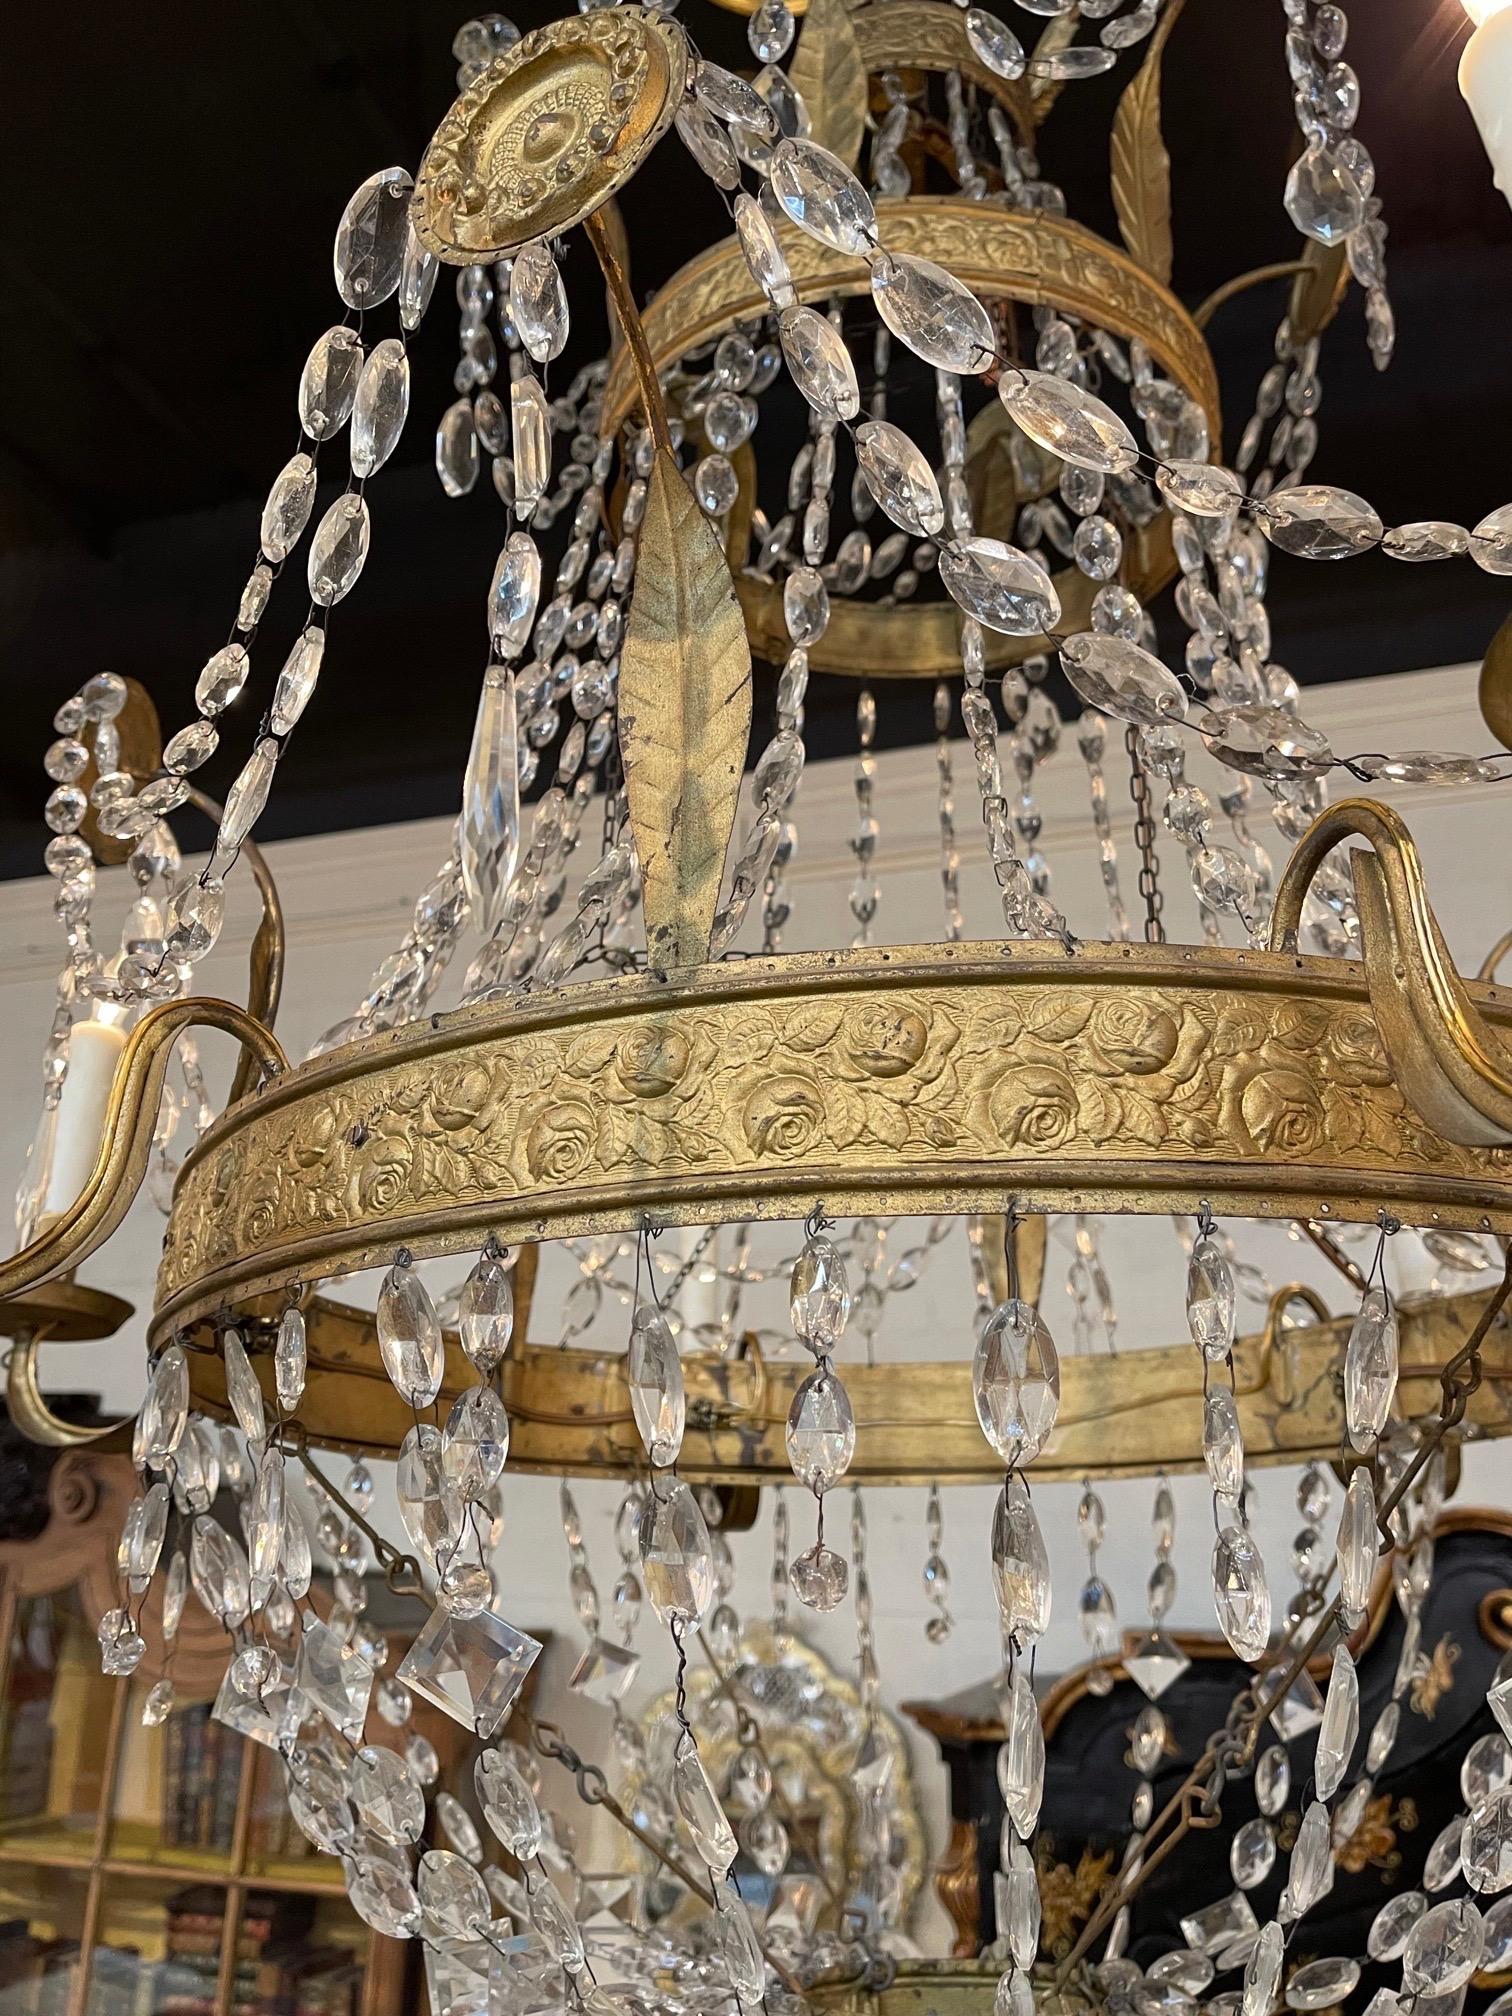 Exceptionnel lustre du XVIIIe siècle en métal doré et cristal de Toscane. Avec des cristaux en cascade et de jolis détails en métal doré, notamment des médaillons décoratifs. Superbe !